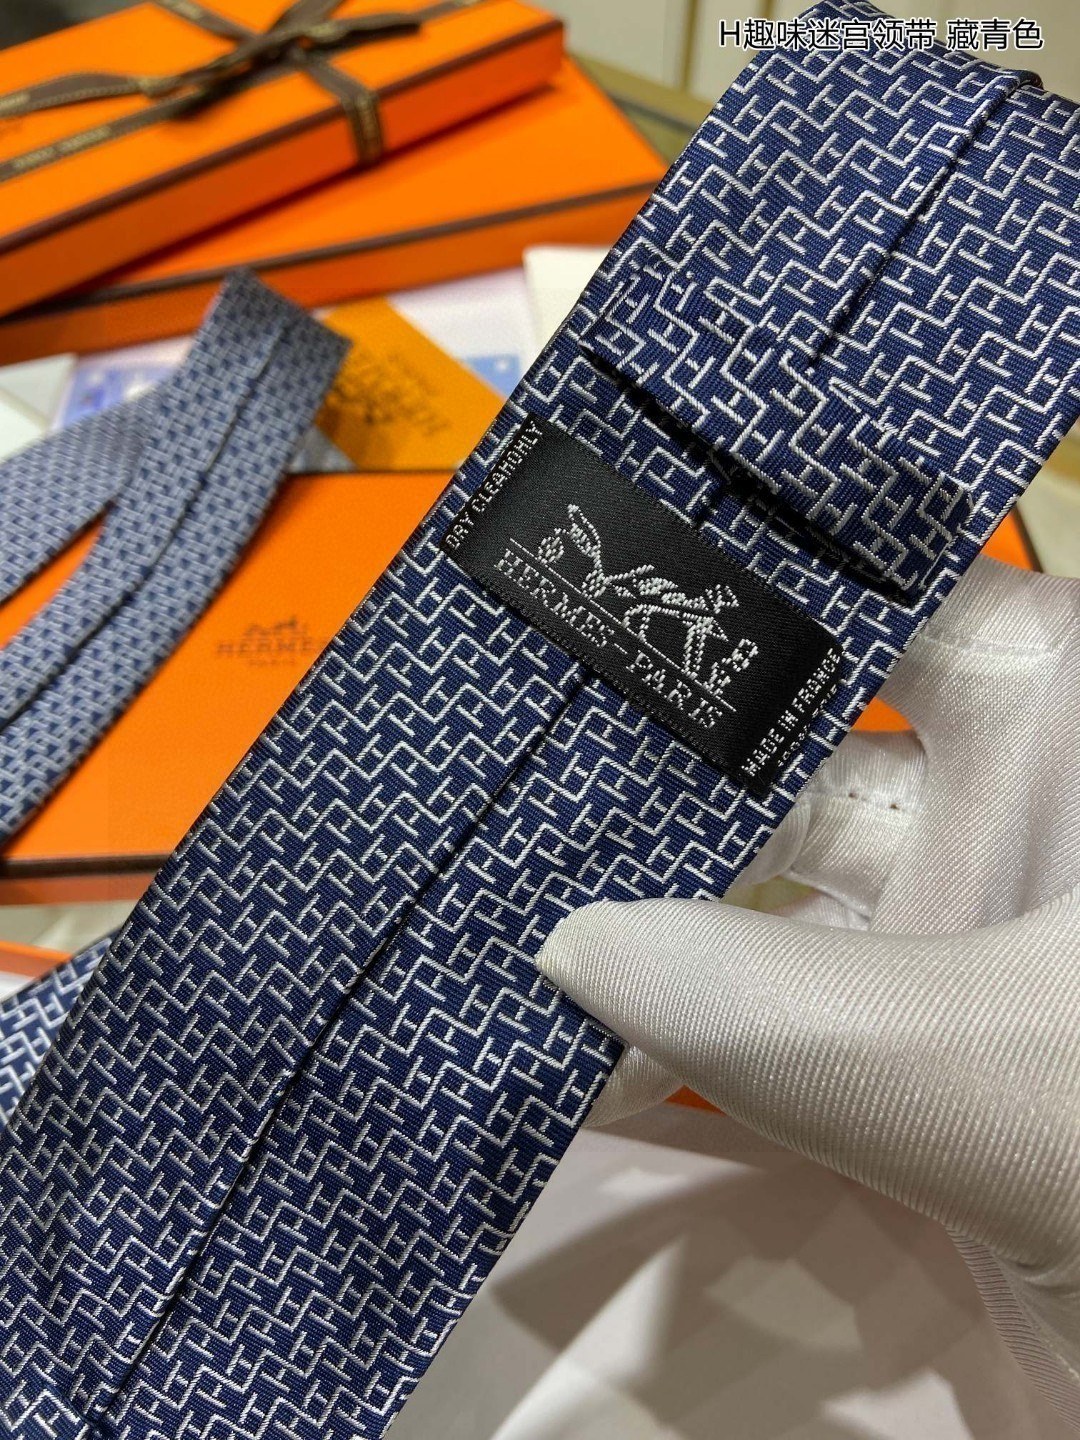 男士新款领带系列H趣味迷宫领带稀有H家每年都有一千条不同印花的领带面世从最初的多以几何图案表现骑术活动为